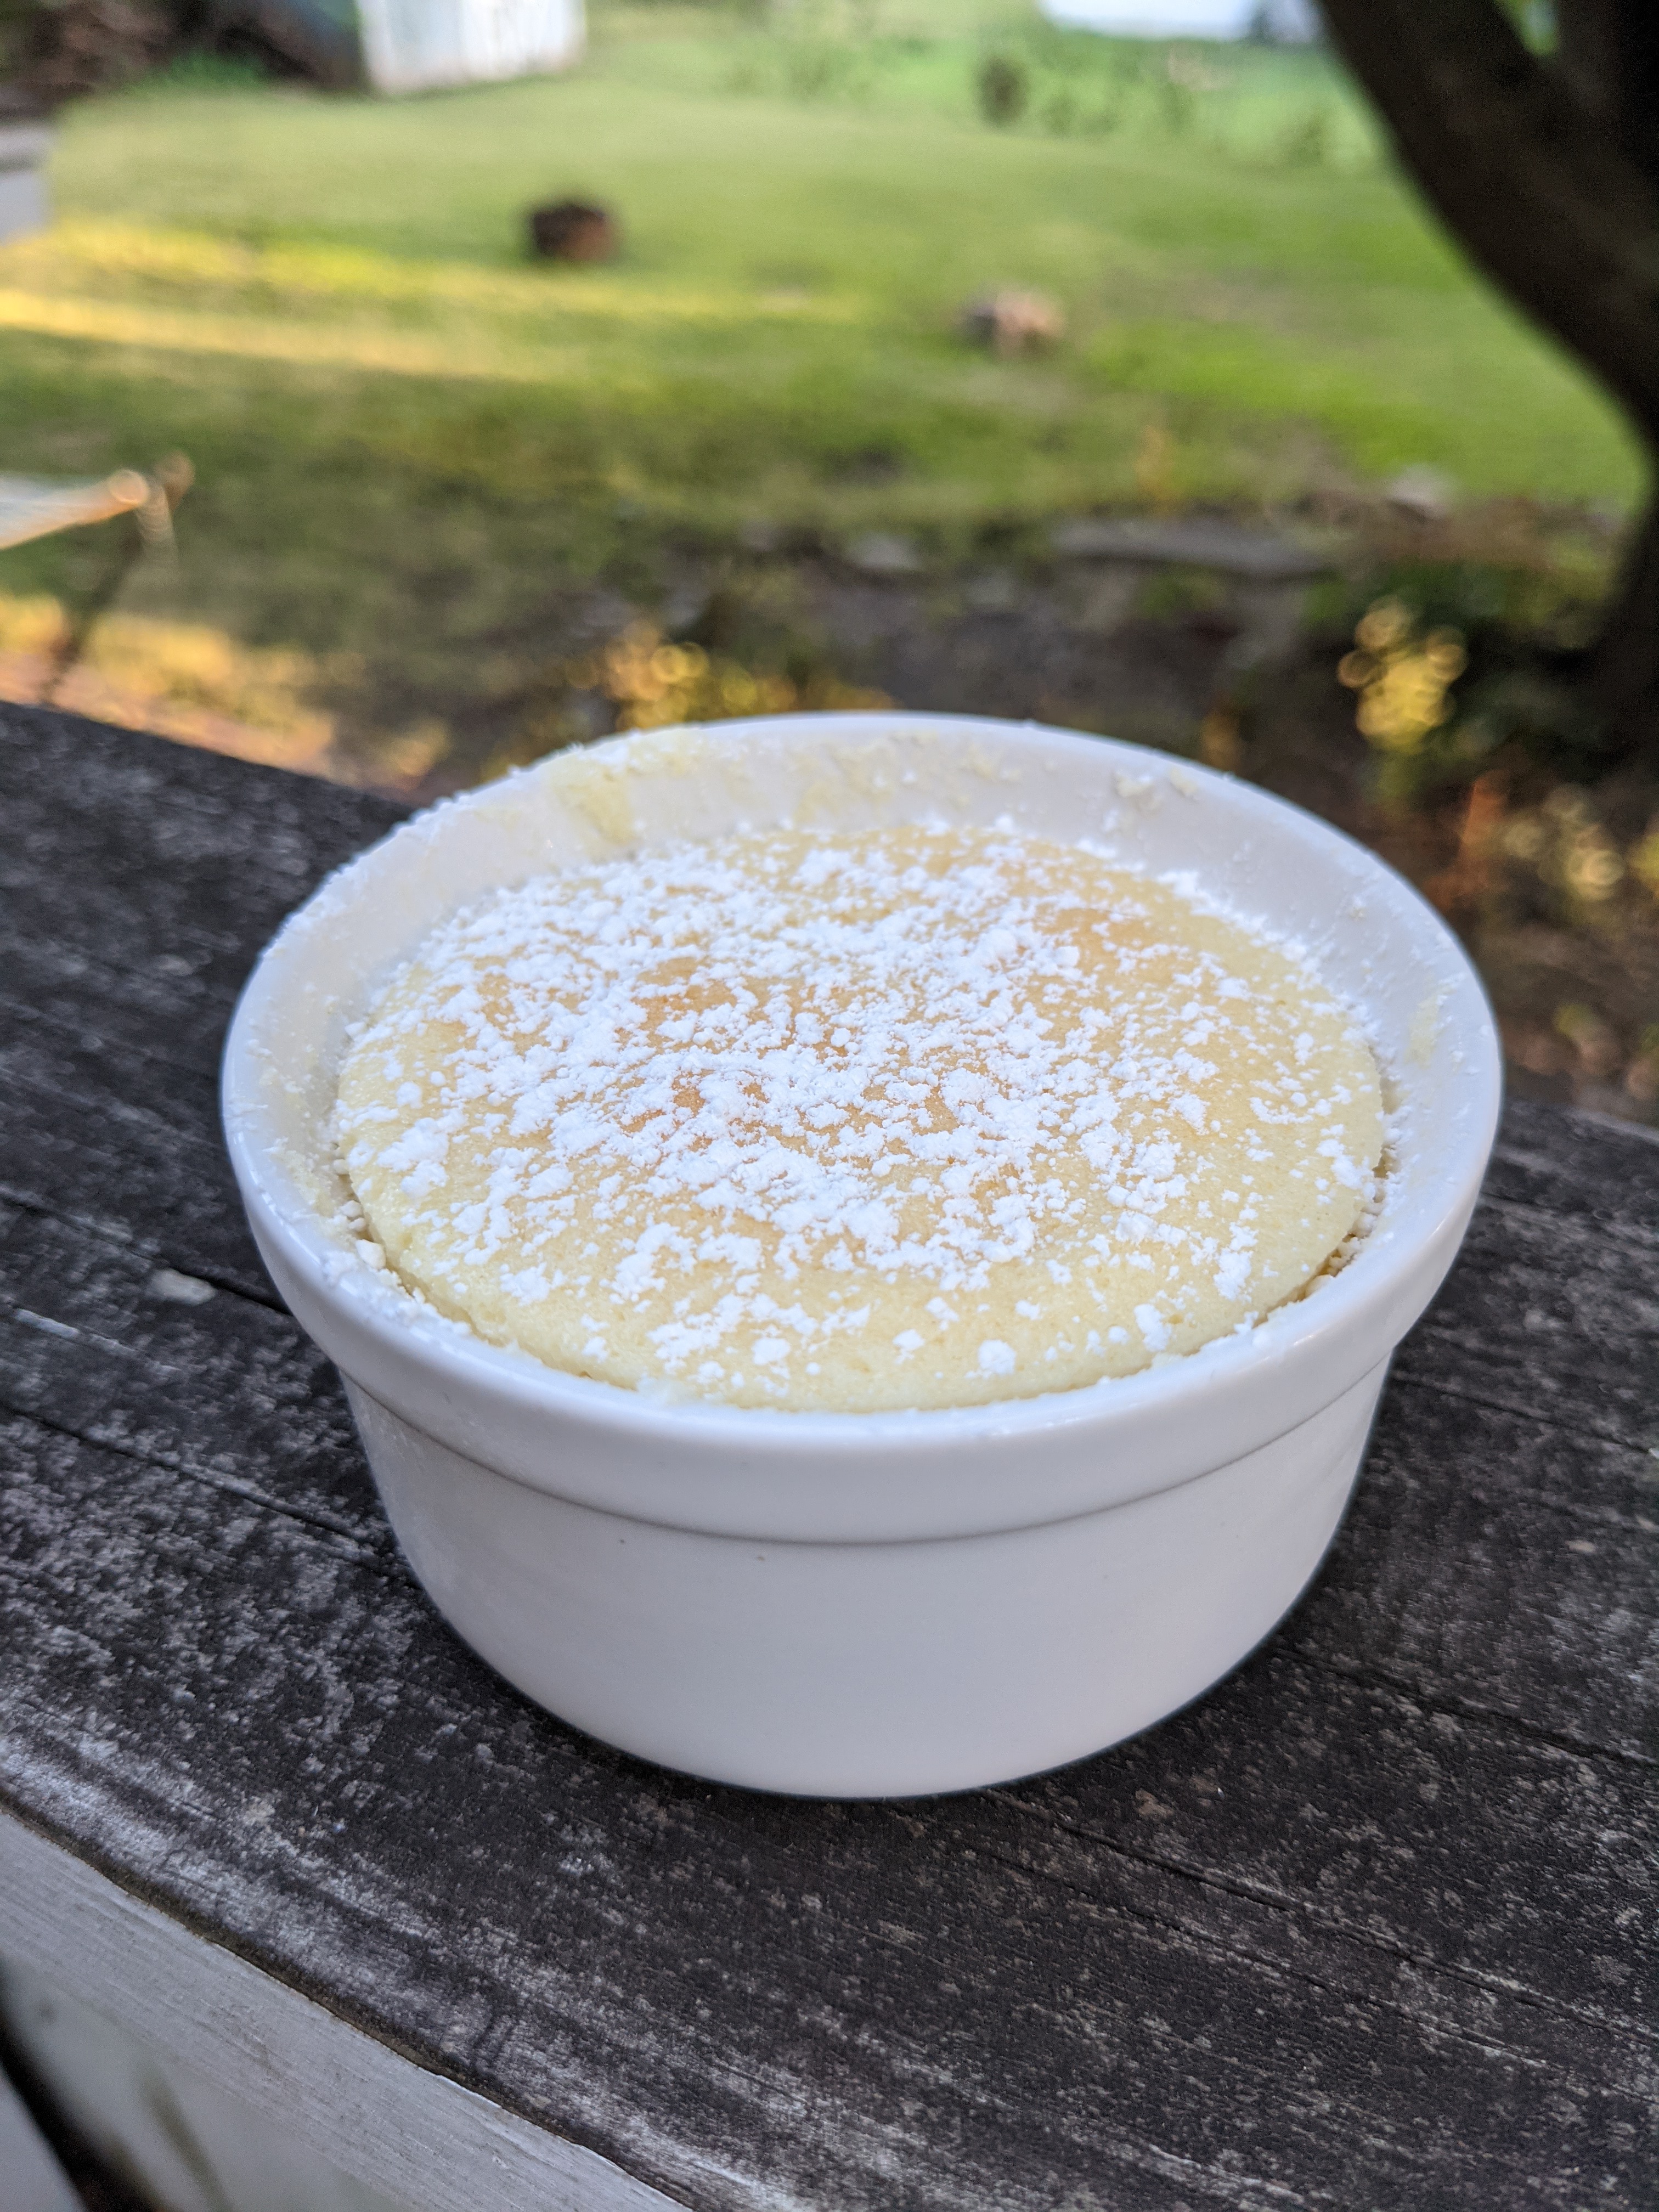 A ramekin with lemon pudding cake